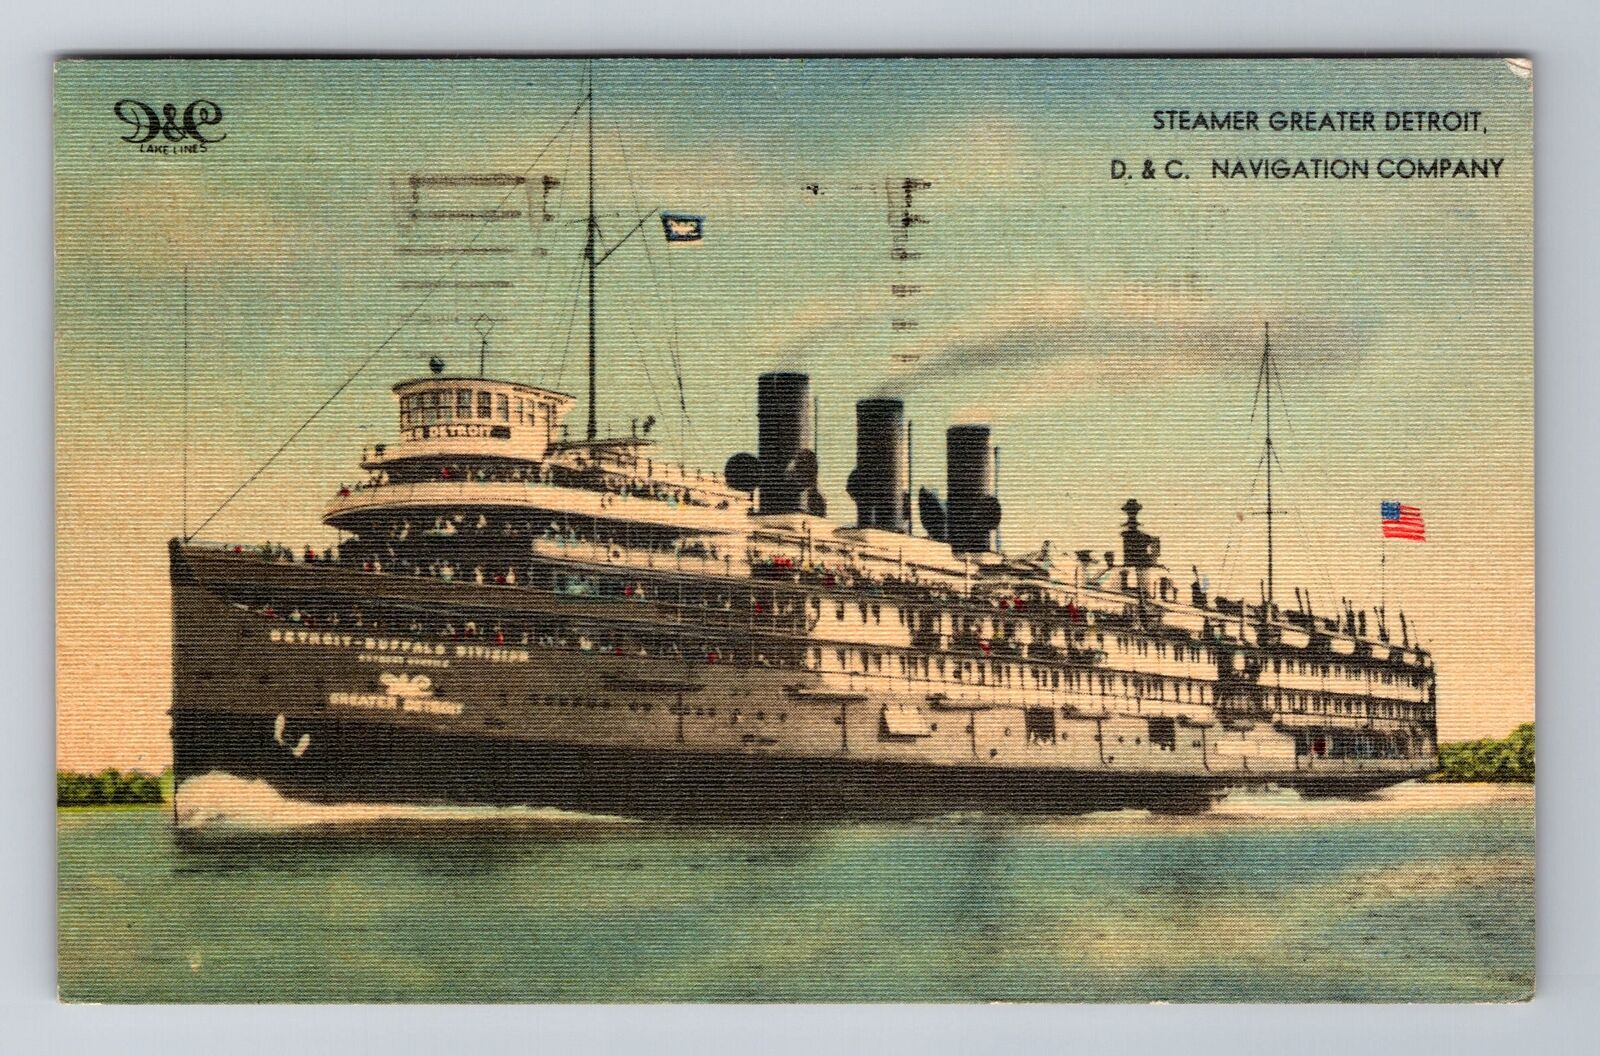 Steamer Greater Detroit, Ship, Transportation, Antique, Vintage c1947 Postcard